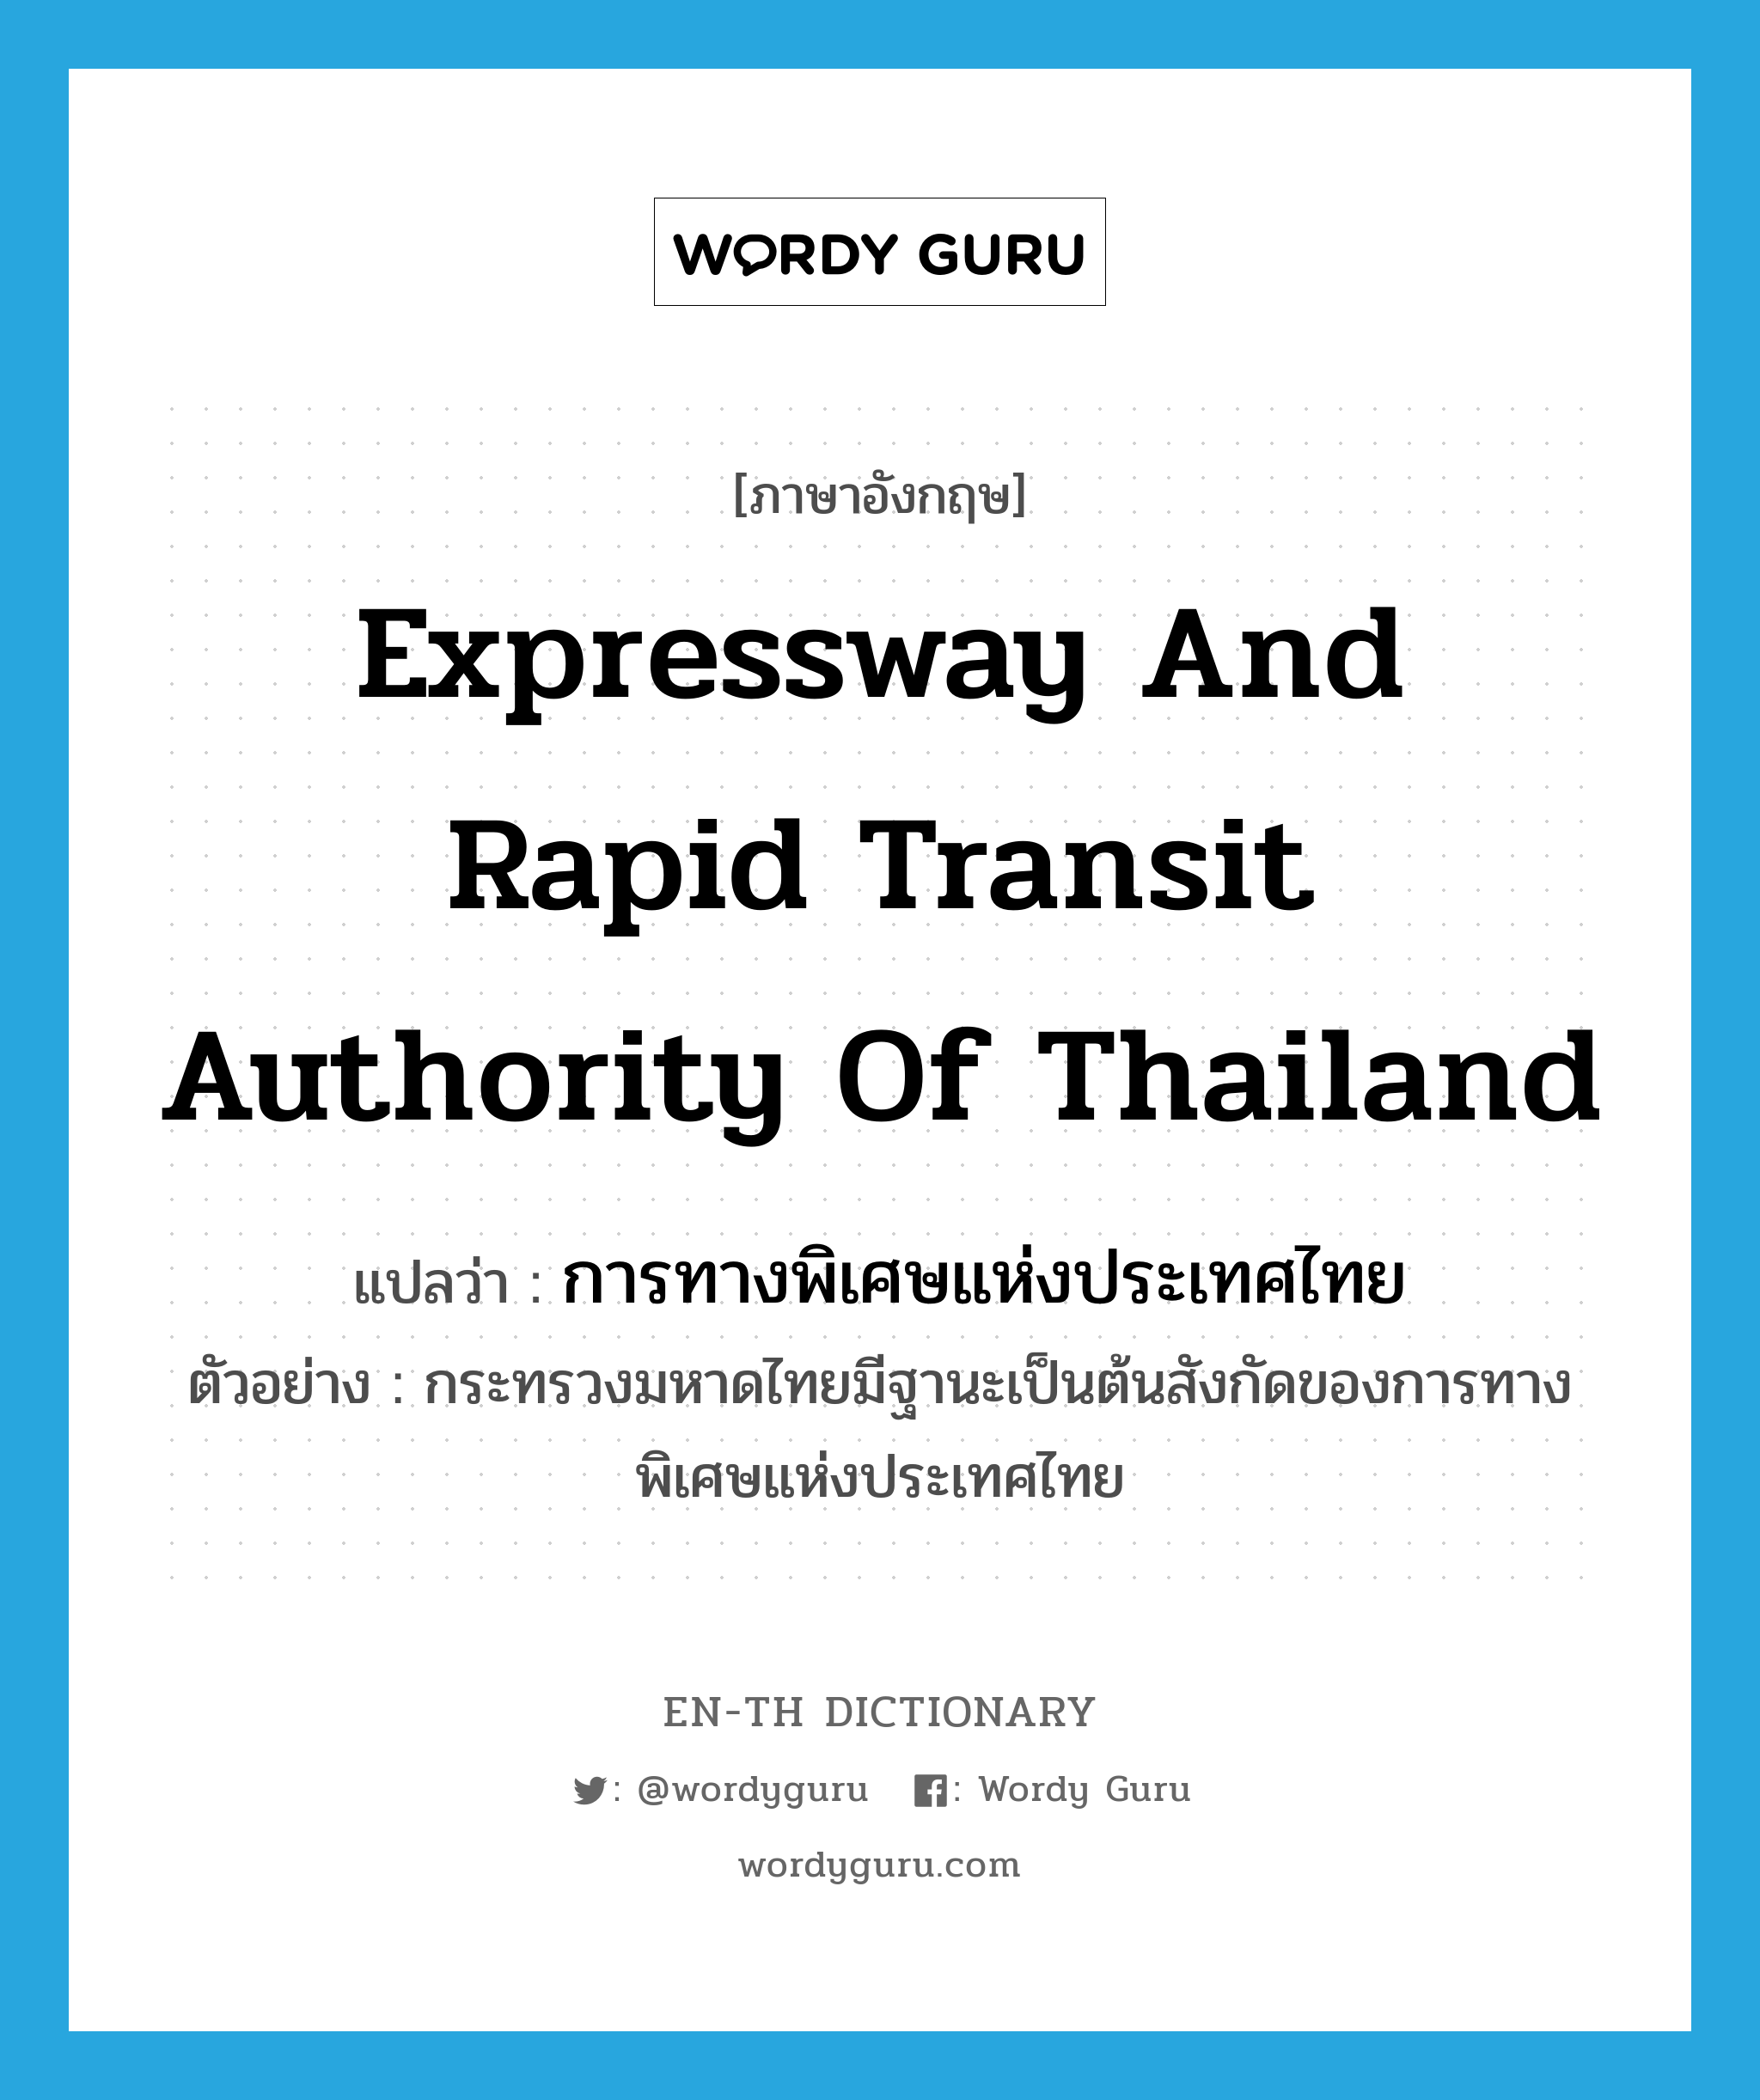 การทางพิเศษแห่งประเทศไทย ภาษาอังกฤษ?, คำศัพท์ภาษาอังกฤษ การทางพิเศษแห่งประเทศไทย แปลว่า Expressway and Rapid Transit Authority of Thailand ประเภท N ตัวอย่าง กระทรวงมหาดไทยมีฐานะเป็นต้นสังกัดของการทางพิเศษแห่งประเทศไทย หมวด N